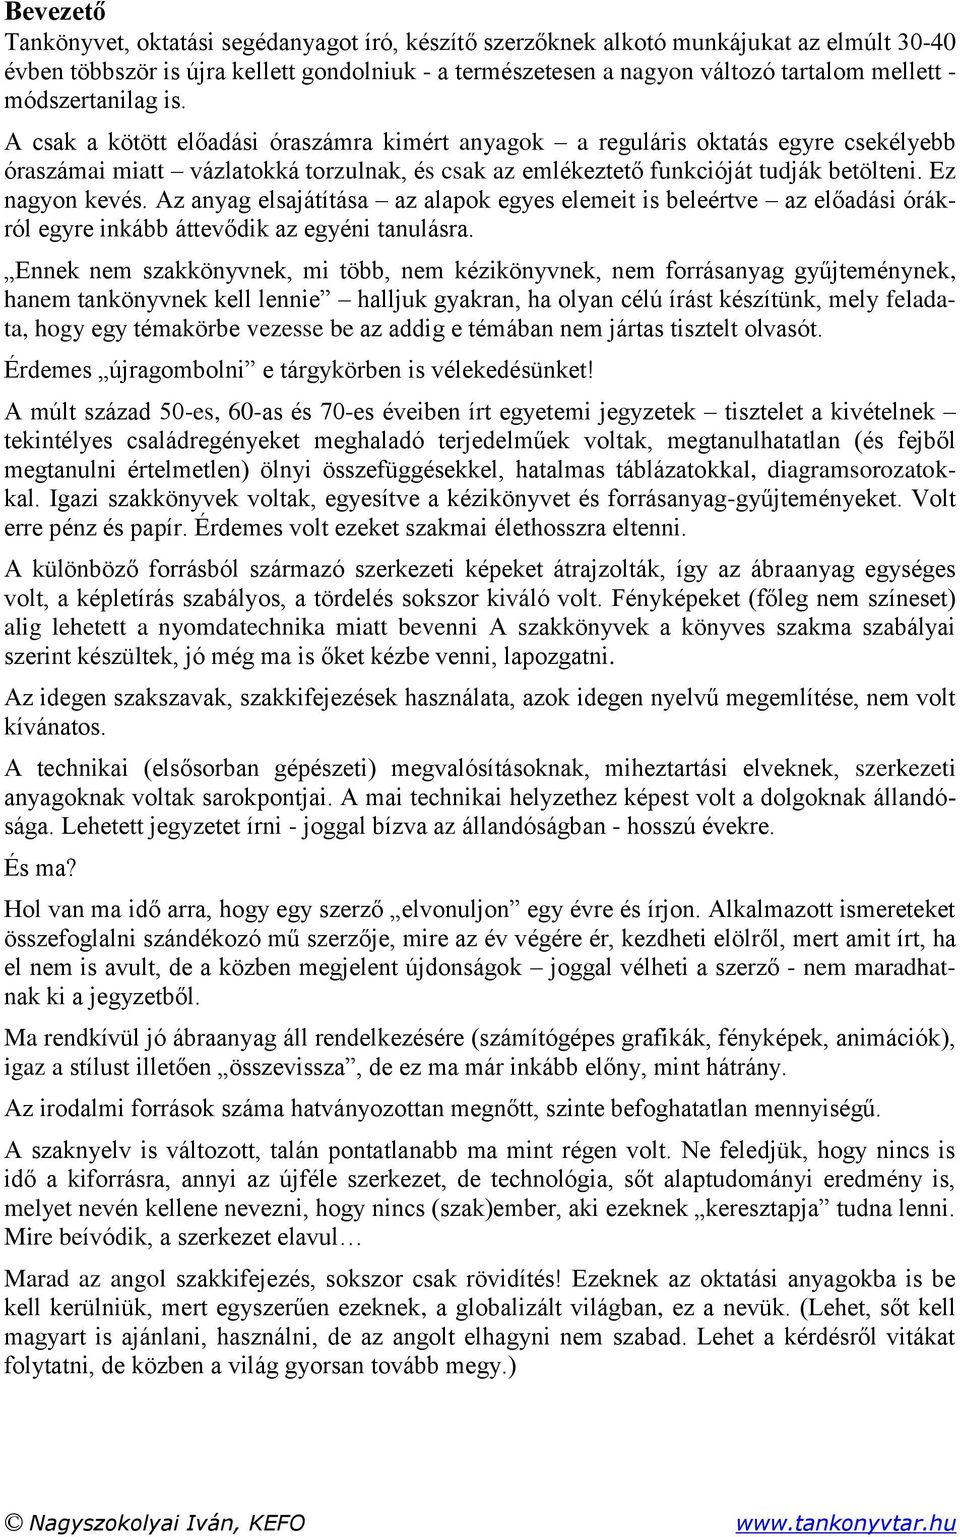 Nagyszokolyai Iván, KEFO - PDF Free Download